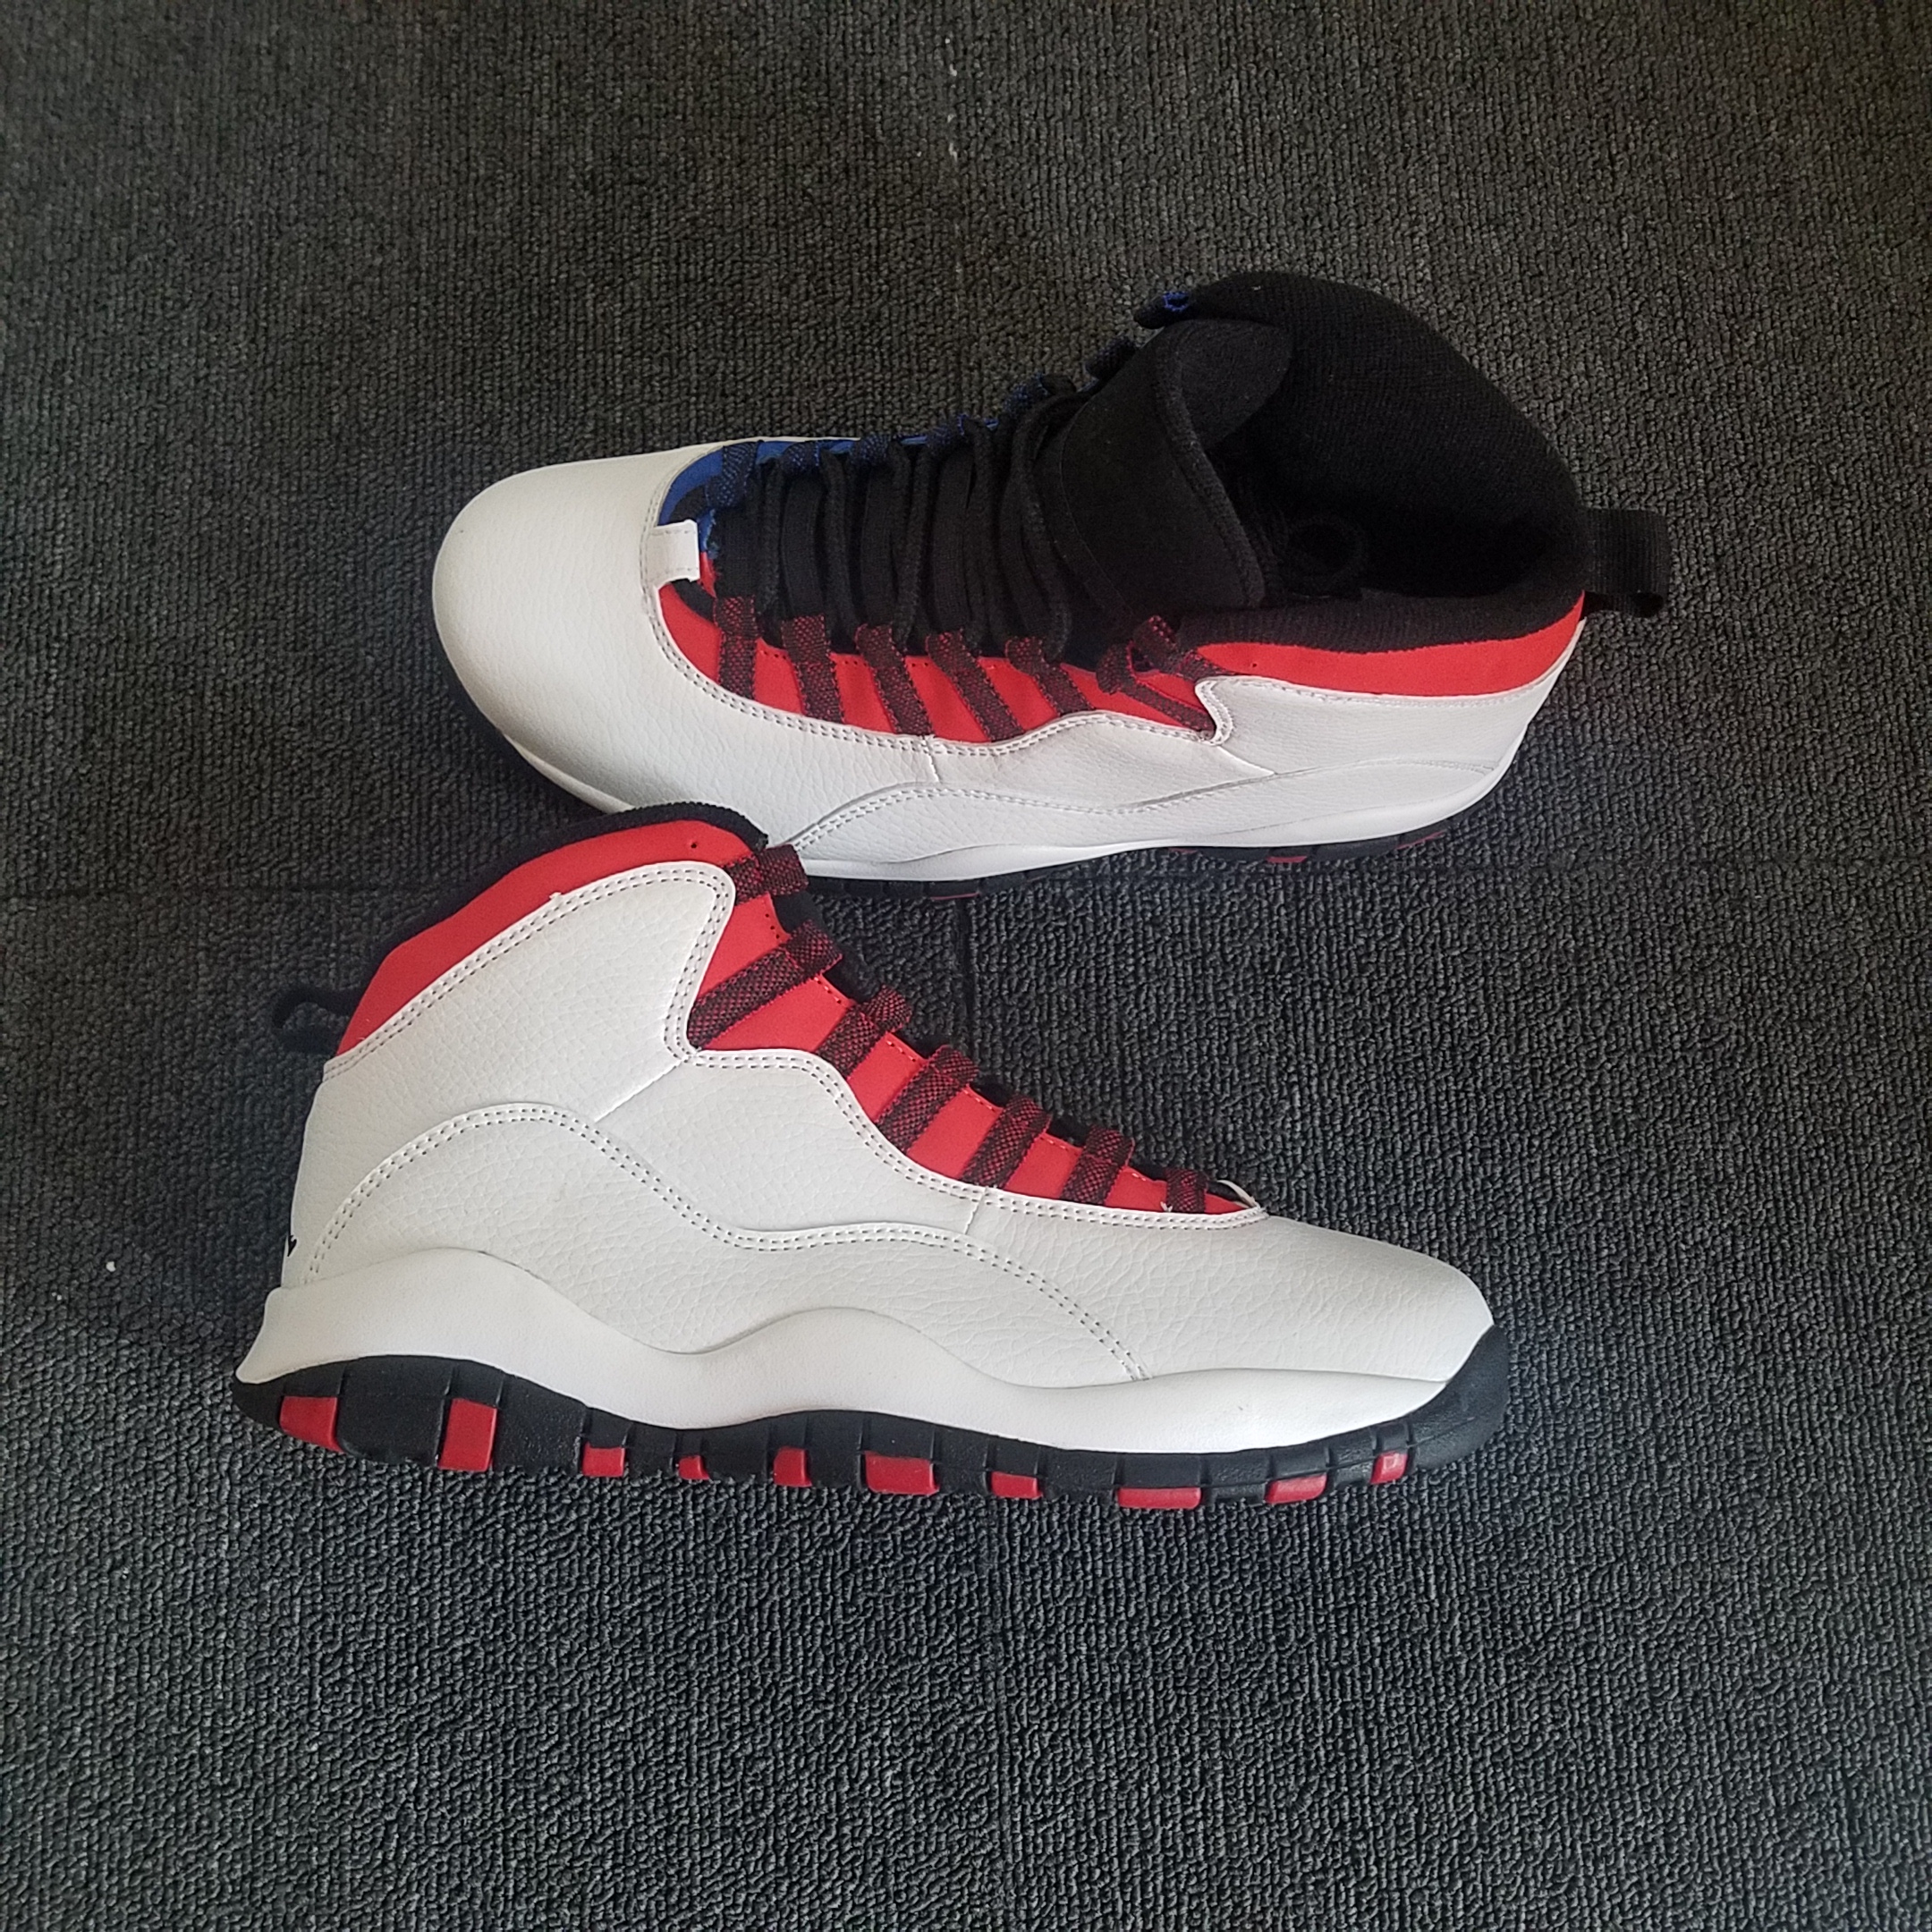 What the Jordan of Air Jordan 10 Shoes